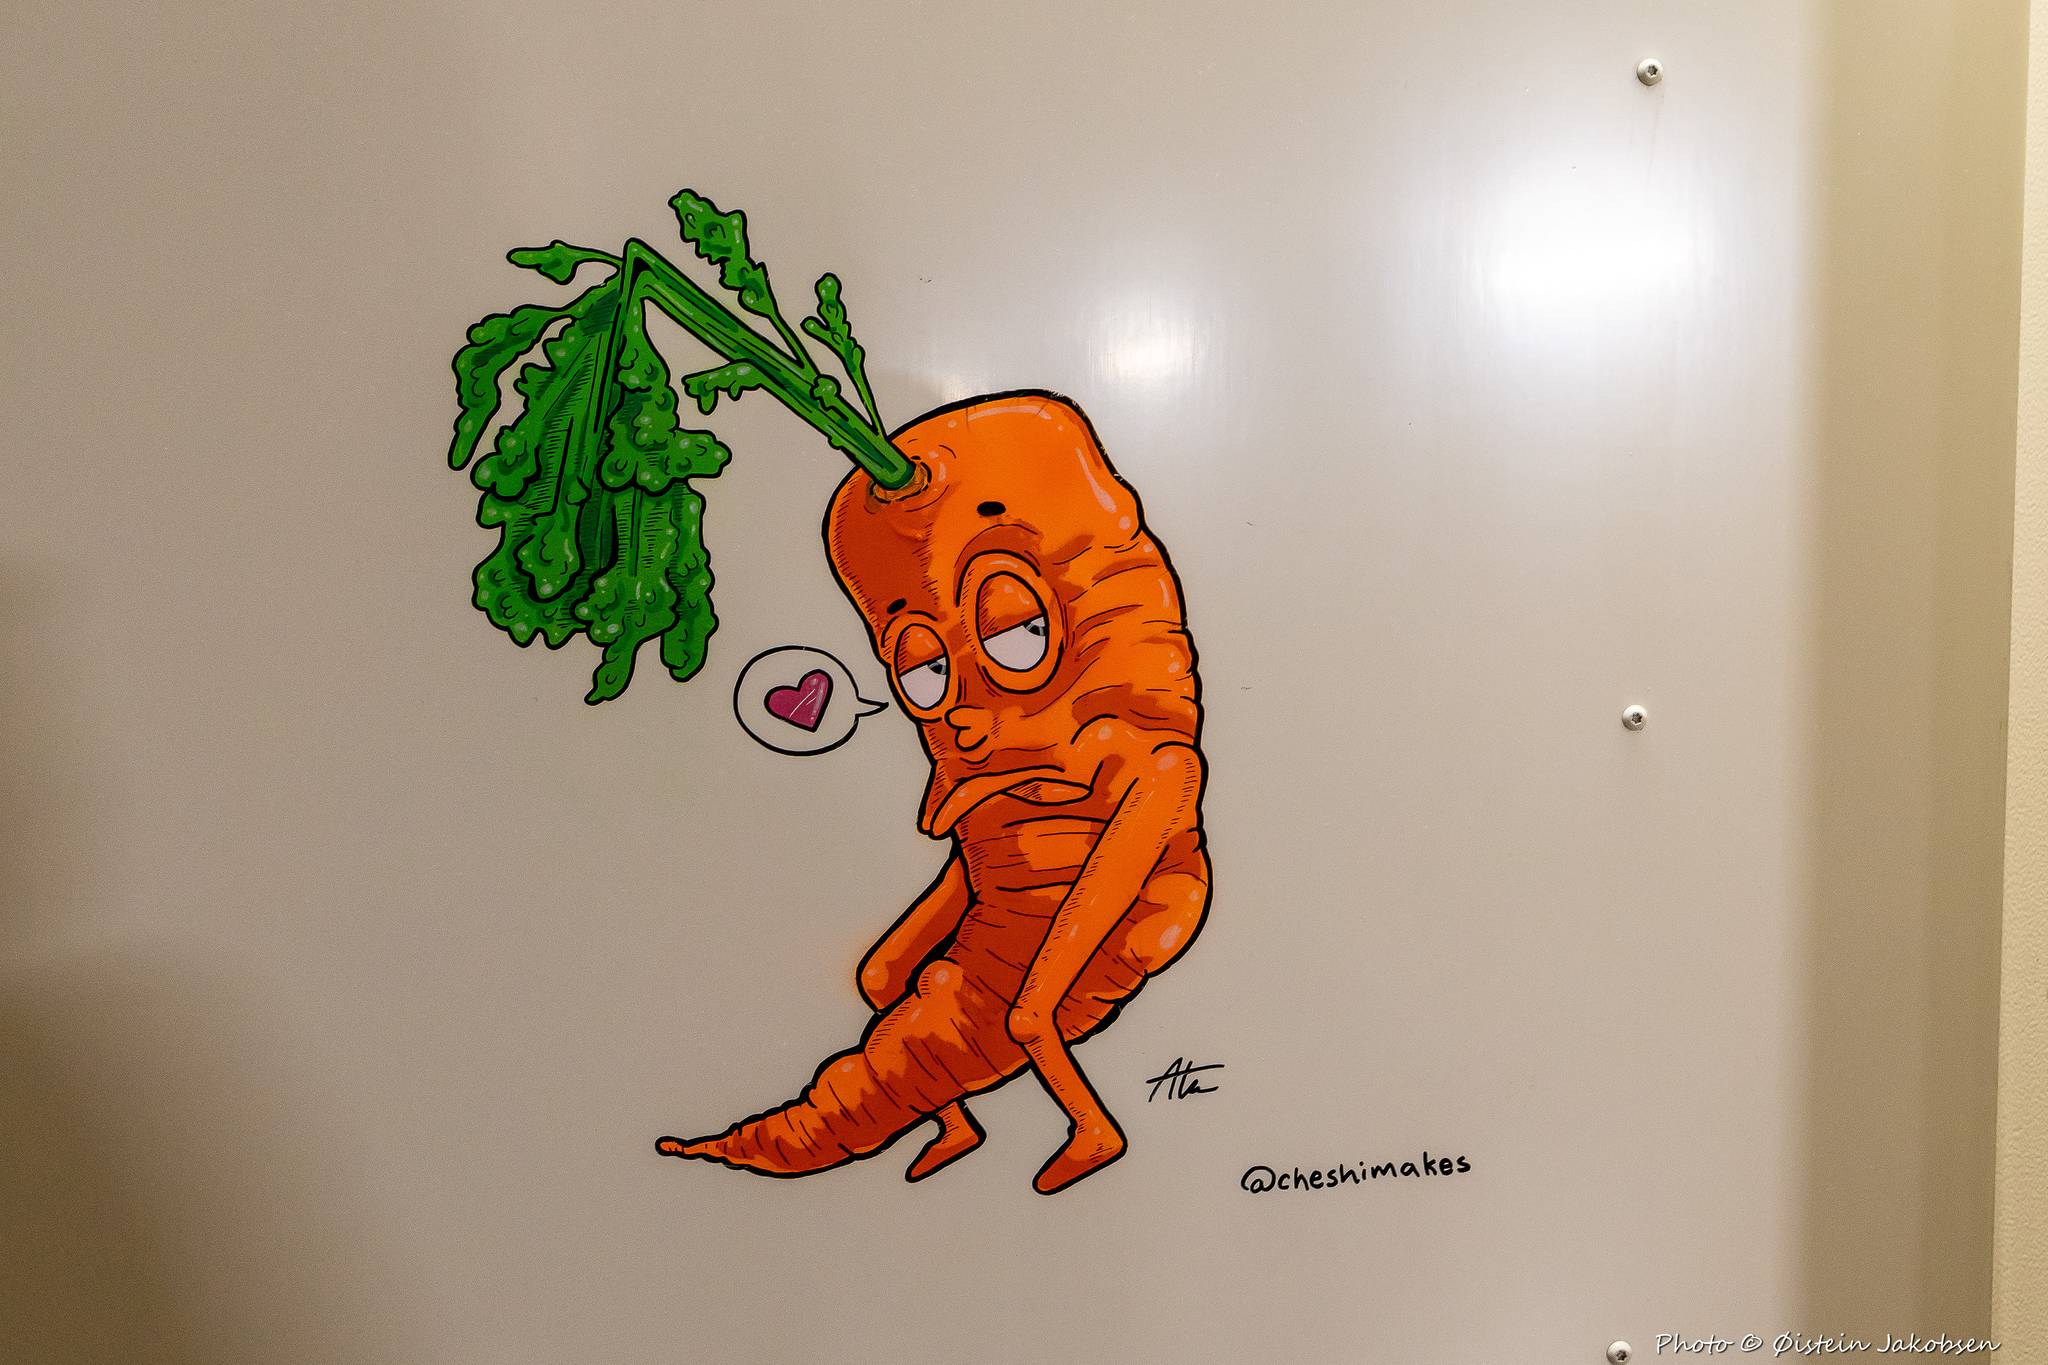 Cheshimakes&mdash;Cheeky Carrot